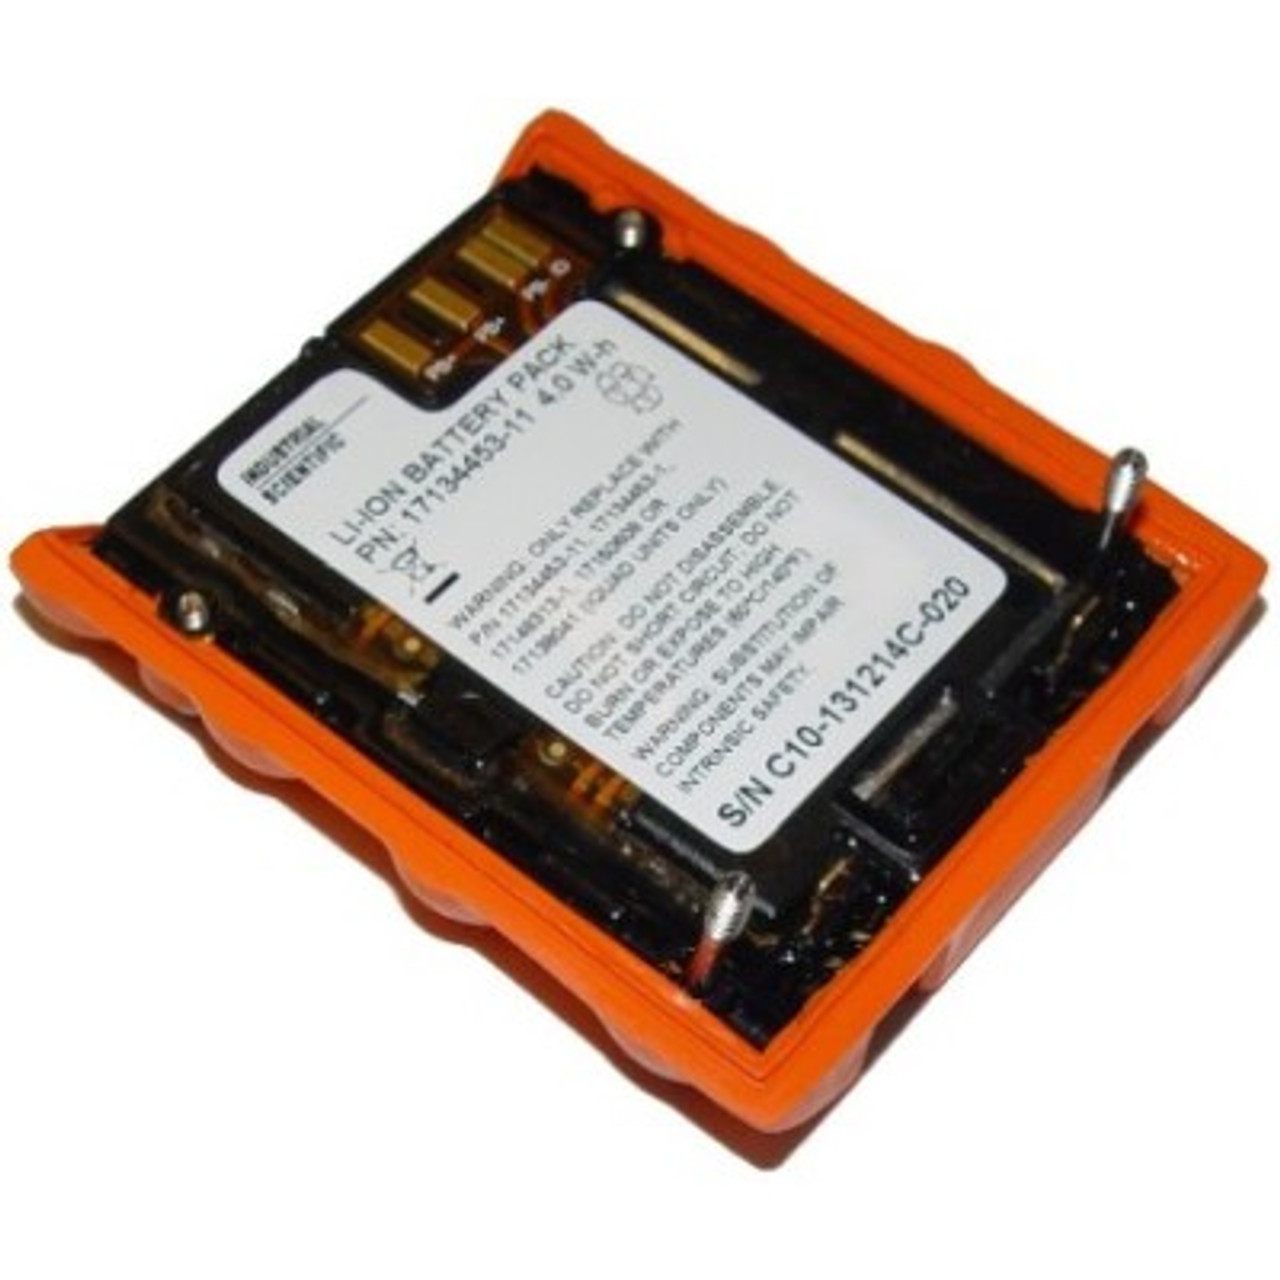 Buy BrowdyTech BRD_LPE4N/LPE19T - Battery LP-E4N and LP-E19T7.4V